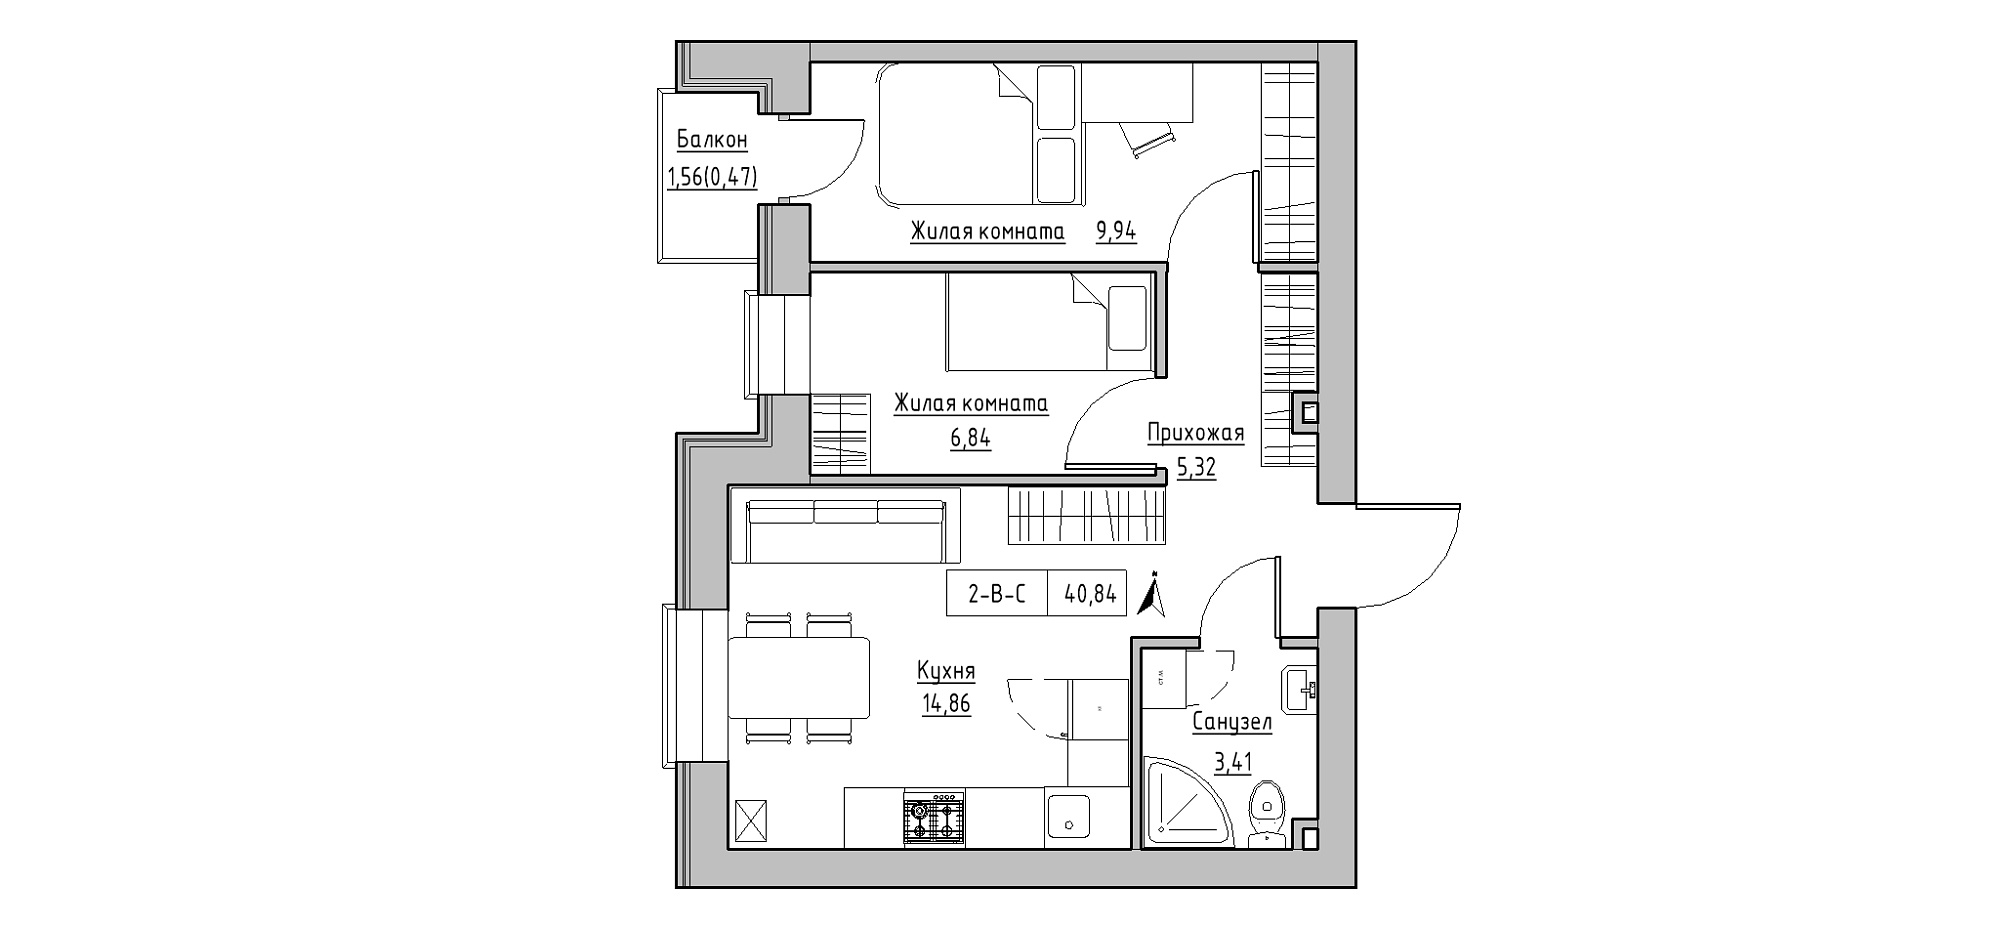 Планування 2-к квартира площею 40.84м2, KS-020-04/0010.